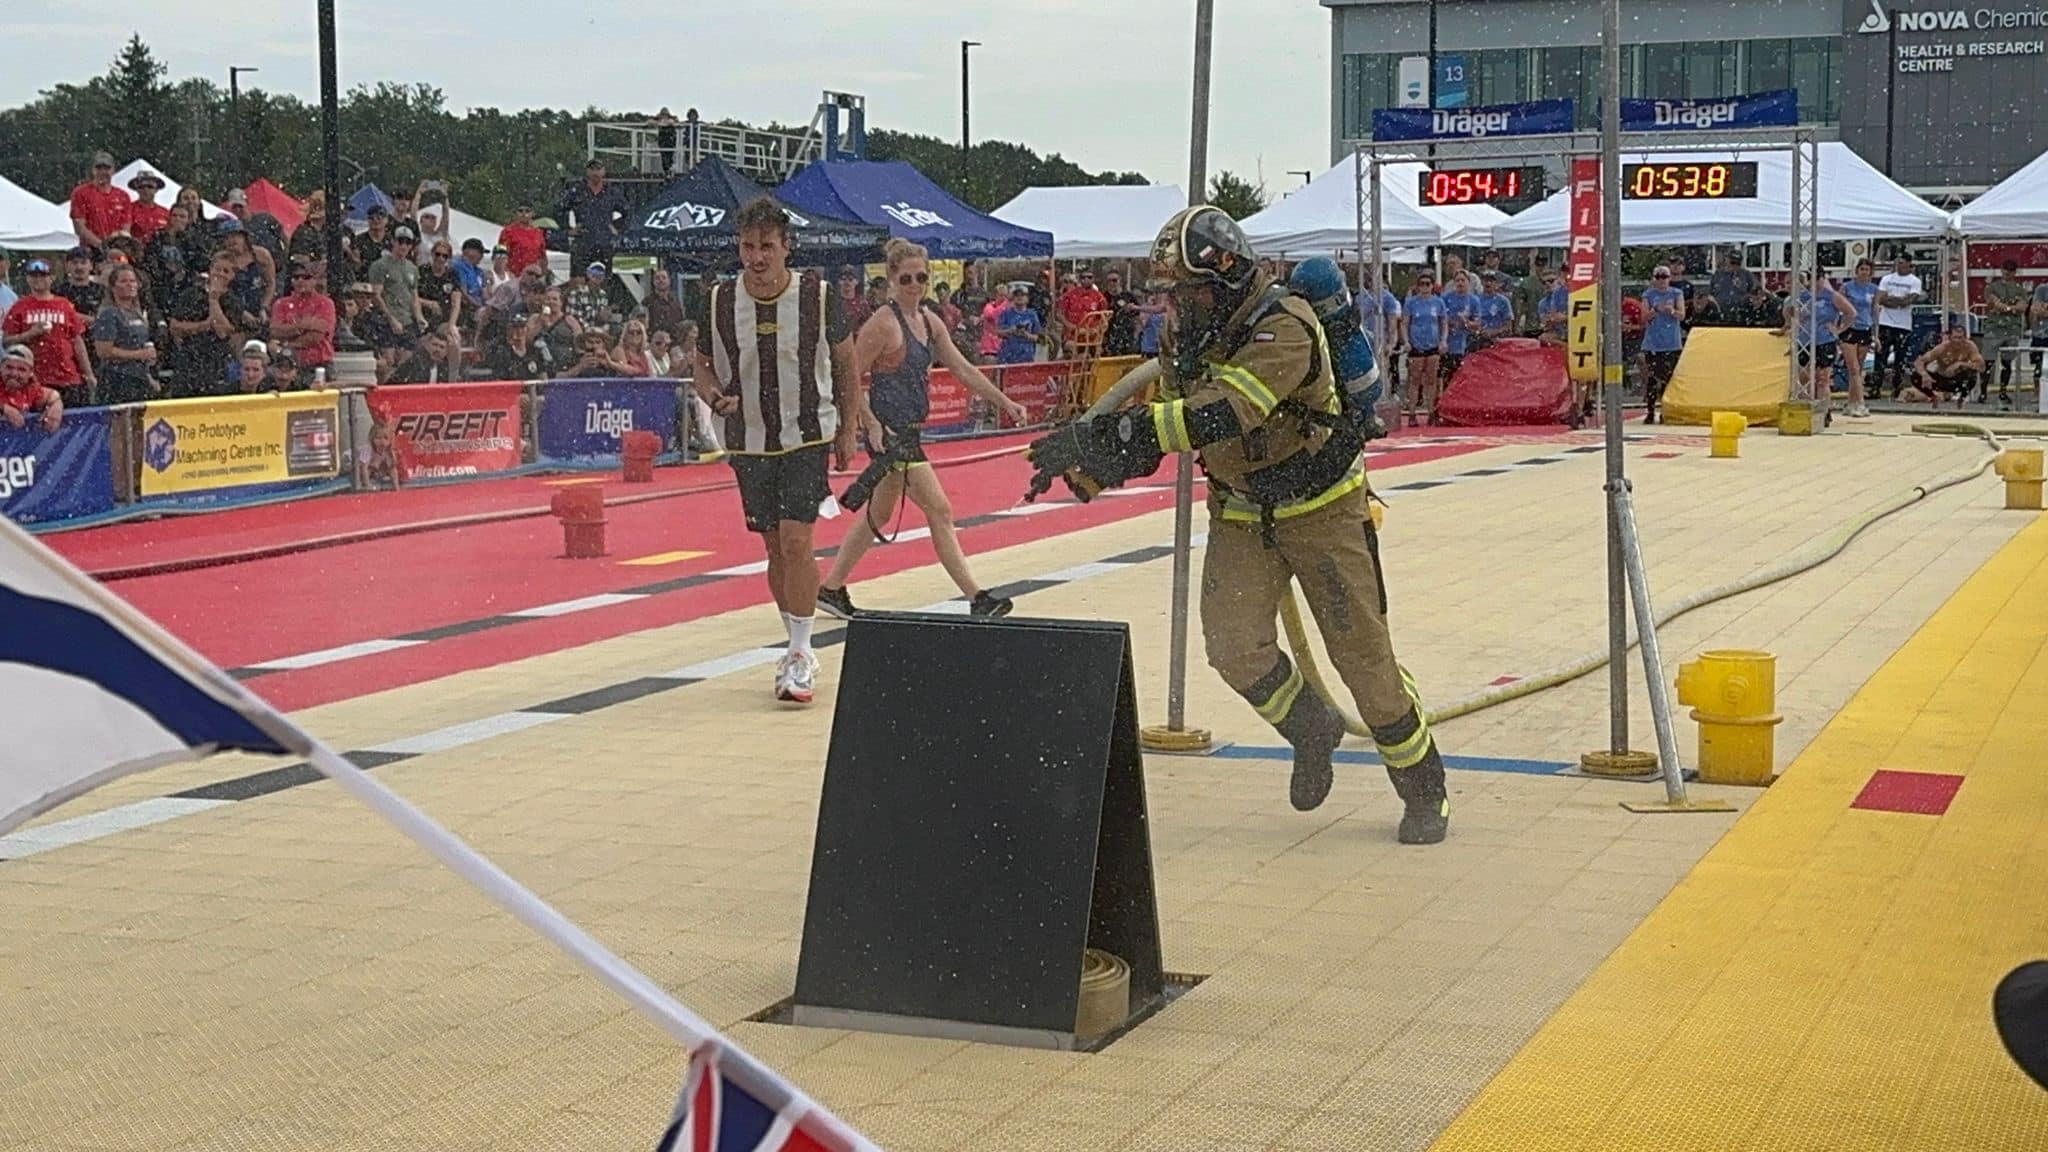 Zawodnik w mundurze strażackim biegnie podczas zawodów , obok niego mężczyzna i kobieta w strojach sportowych, w oddali tablica sportowa z wyświetlonymi wynikami 0;54.1 oraz 0;53.8